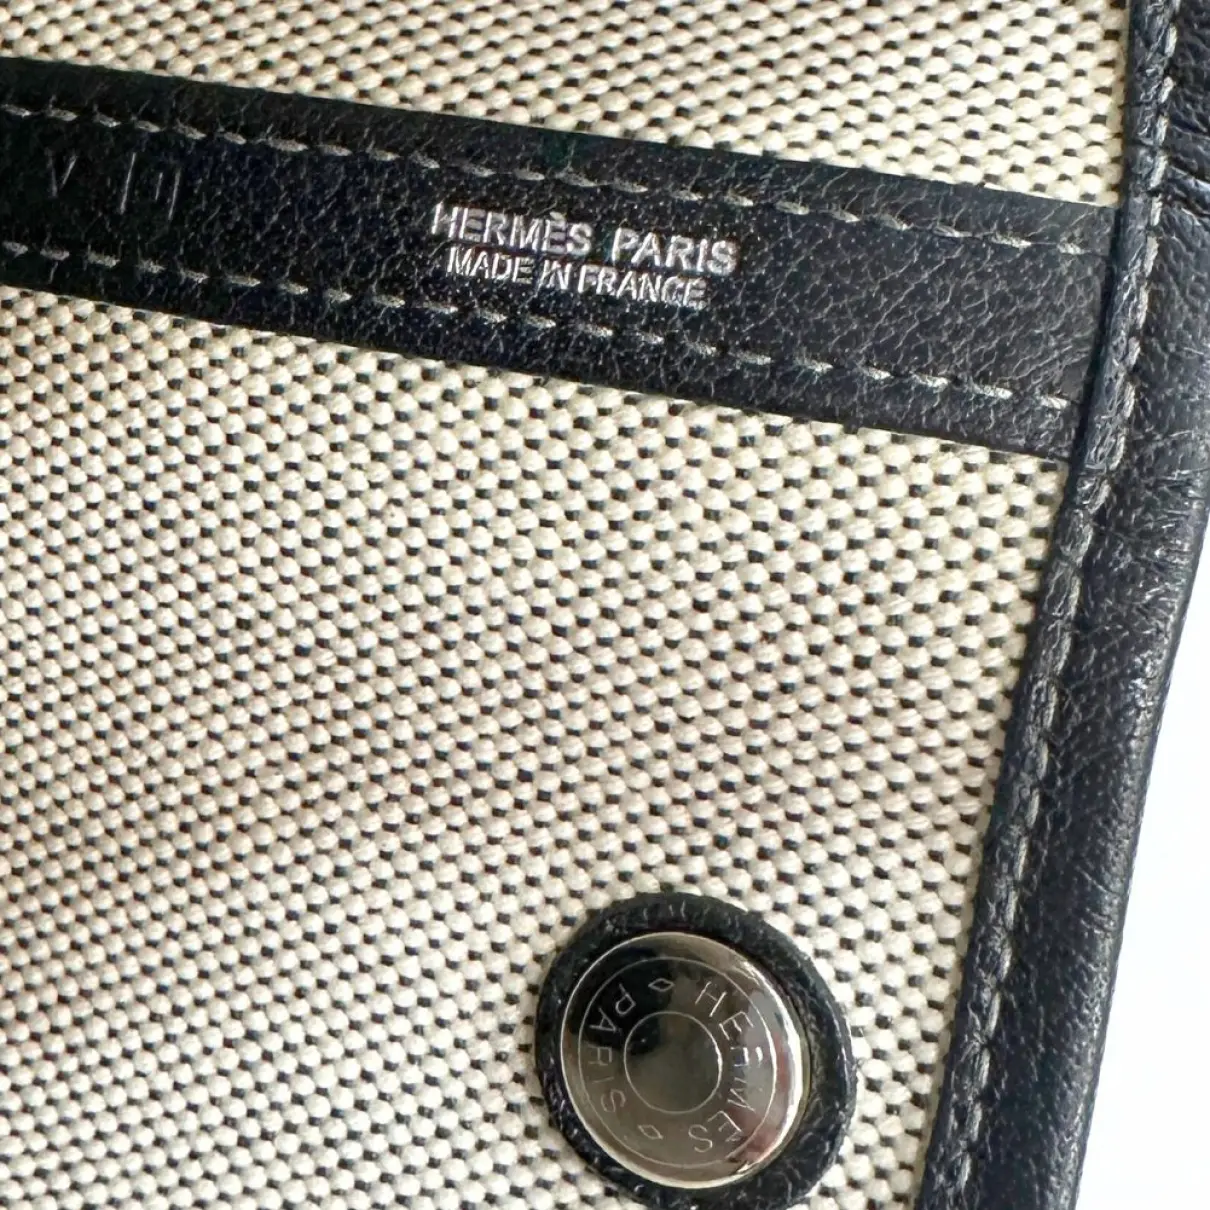 Garden Party cloth handbag Hermès